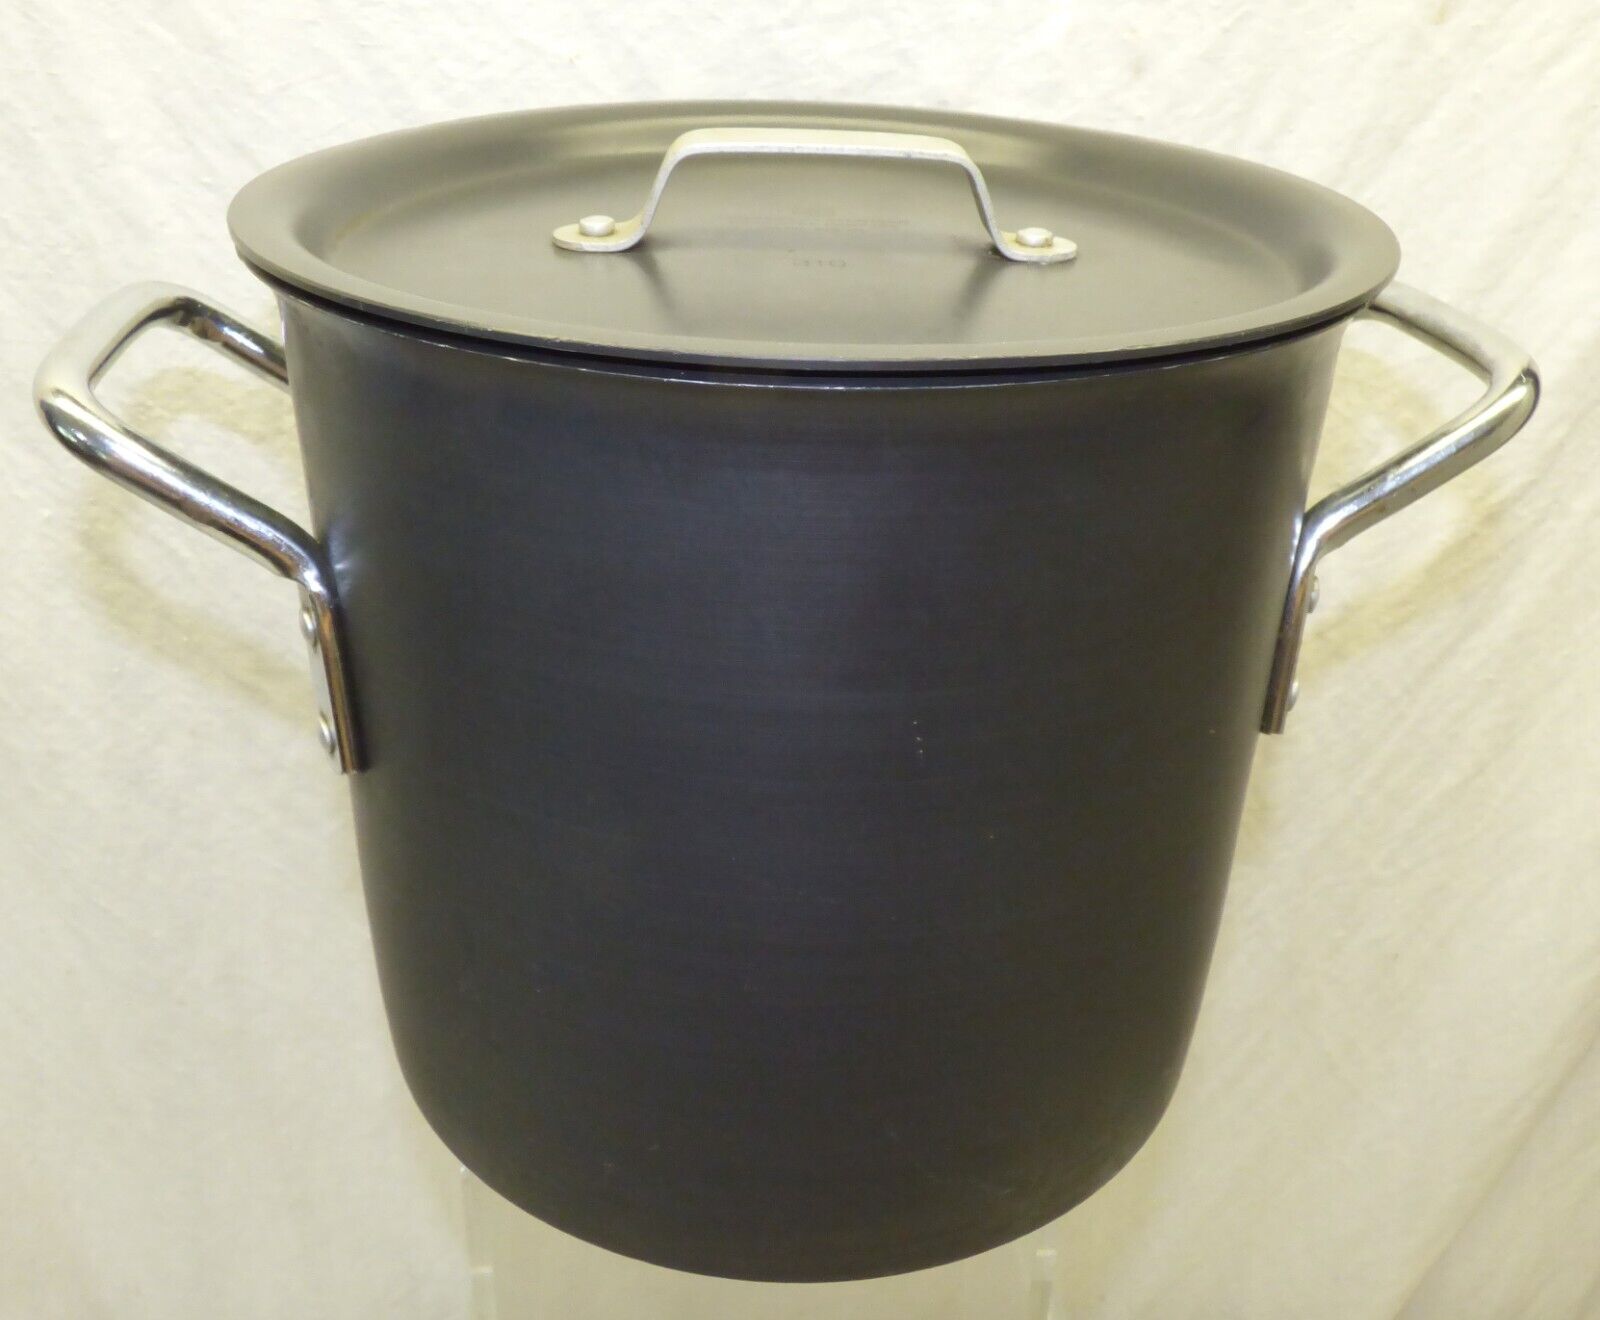 Commercial Aluminum Cookware 8 Qt Stock Pot 808 w/ Lid 310 & 2 Handles Calphalon